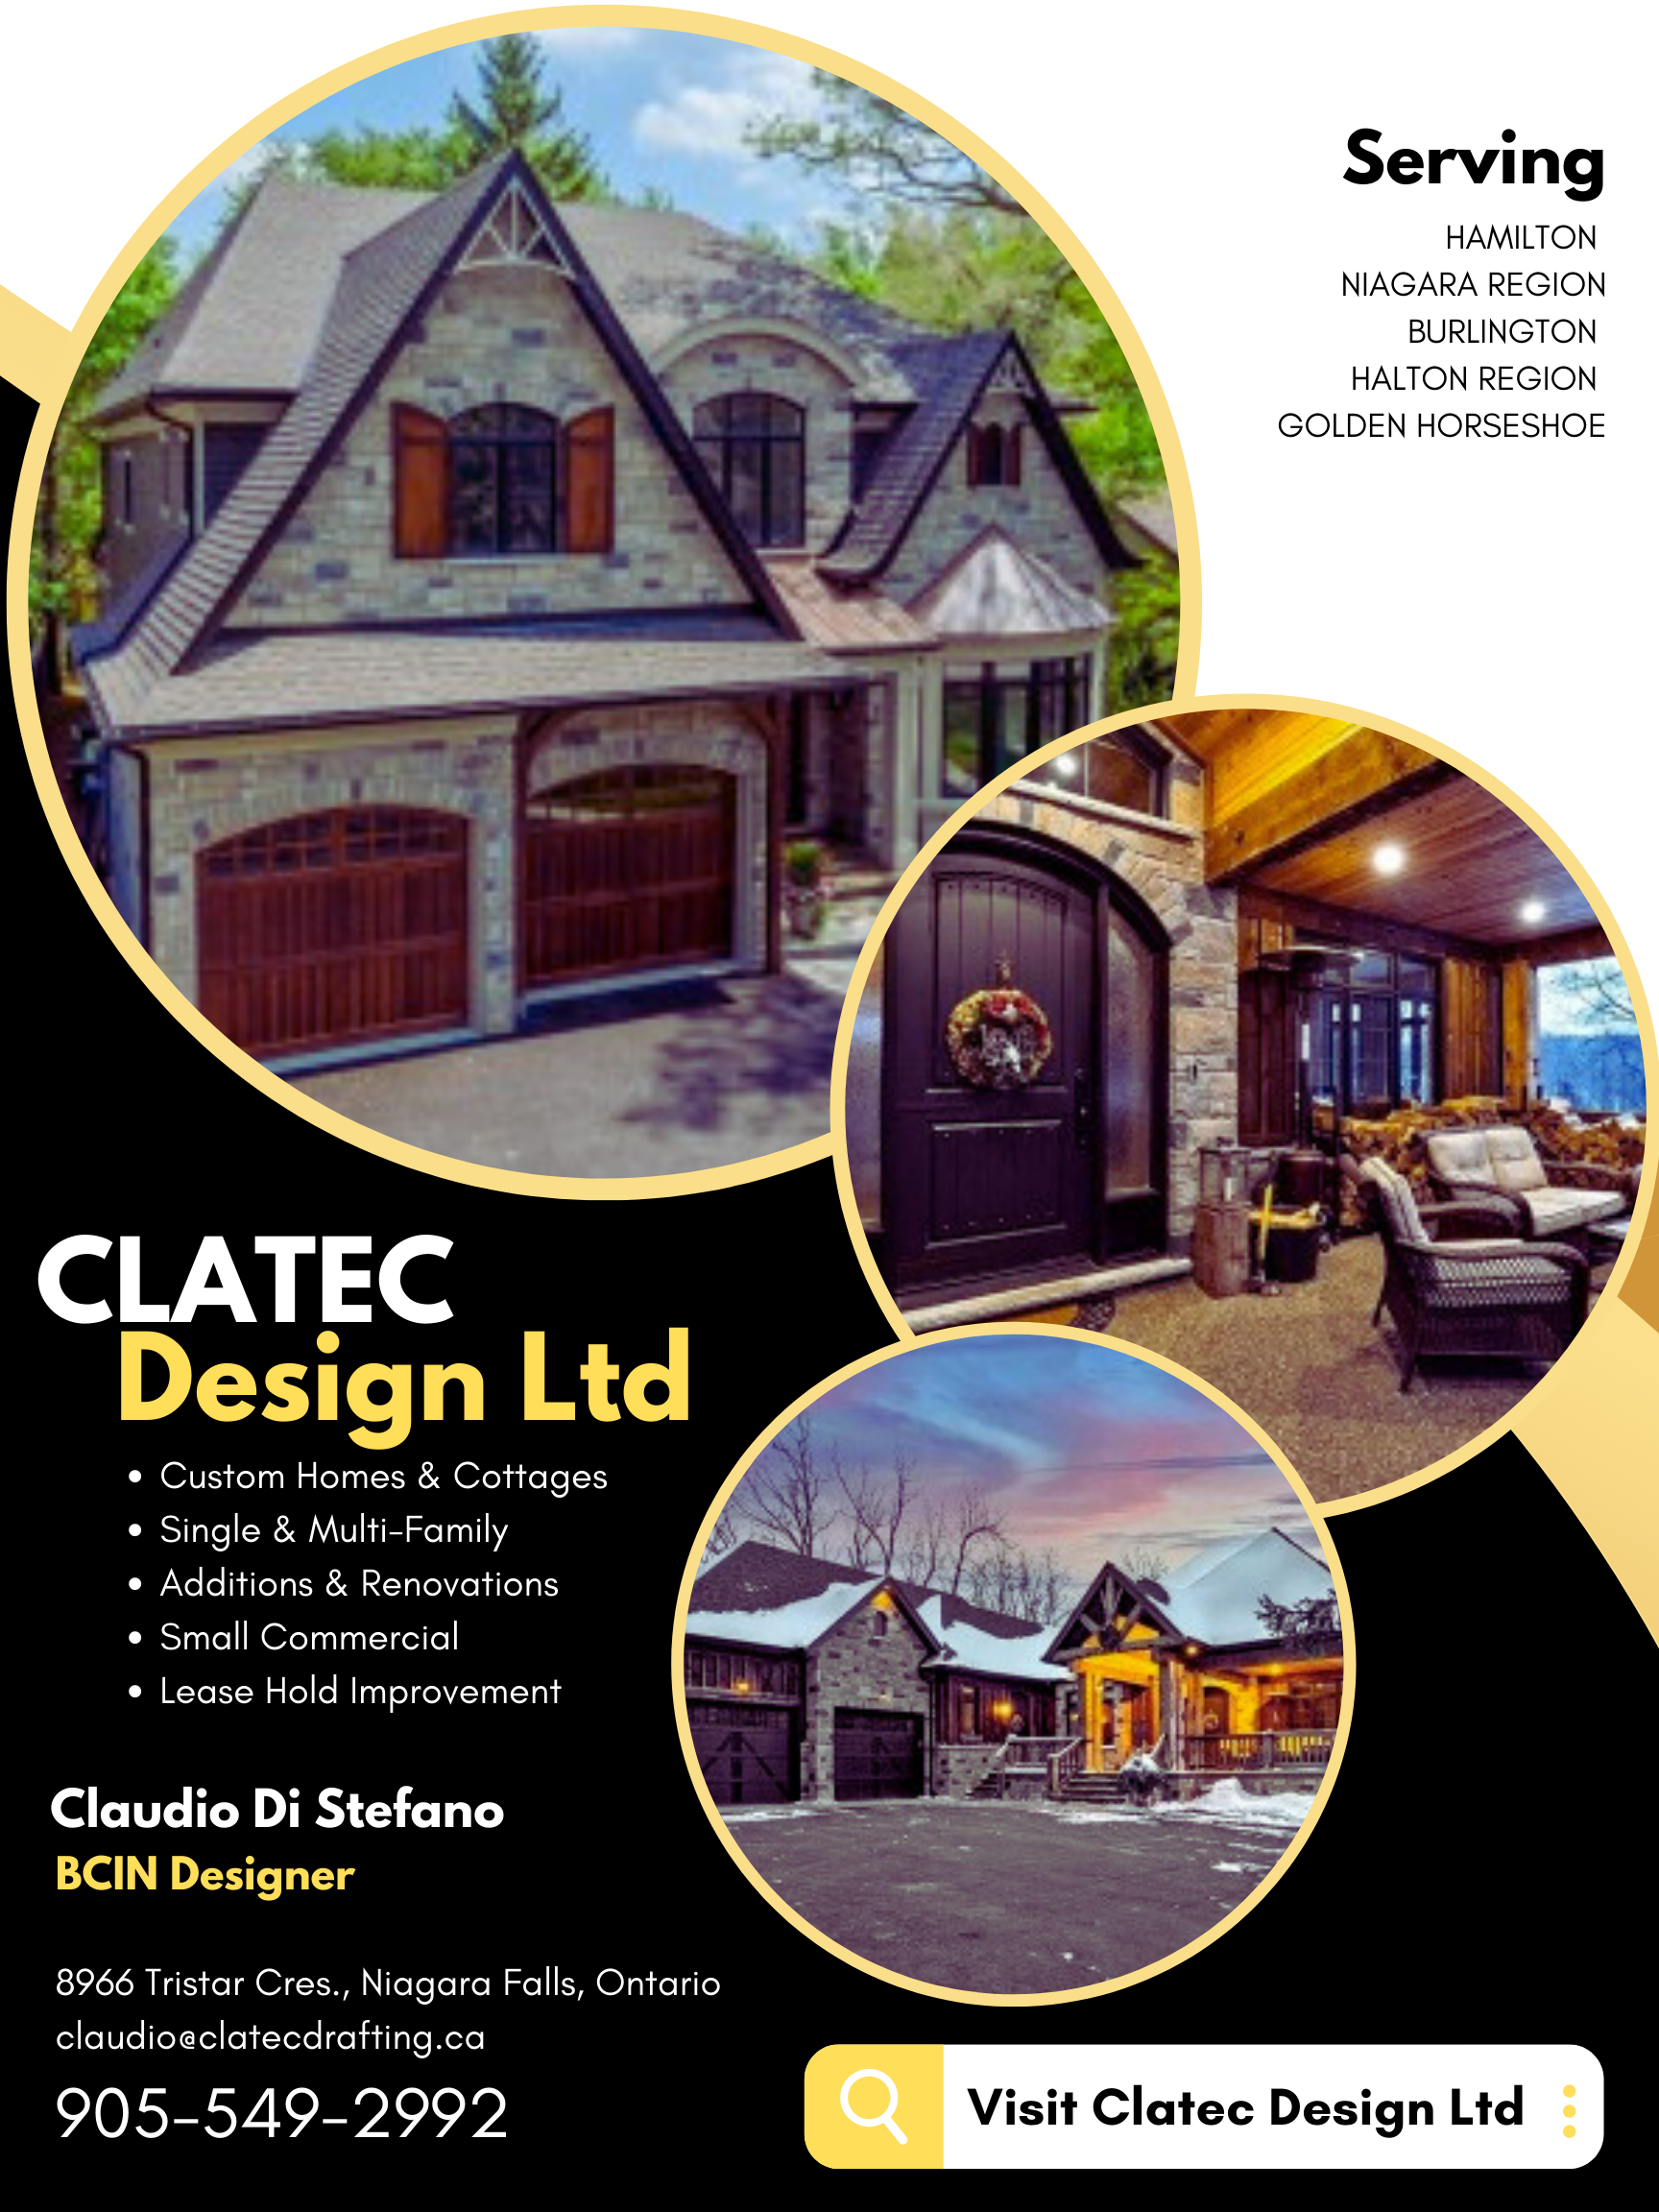 Clatec Design Ltd